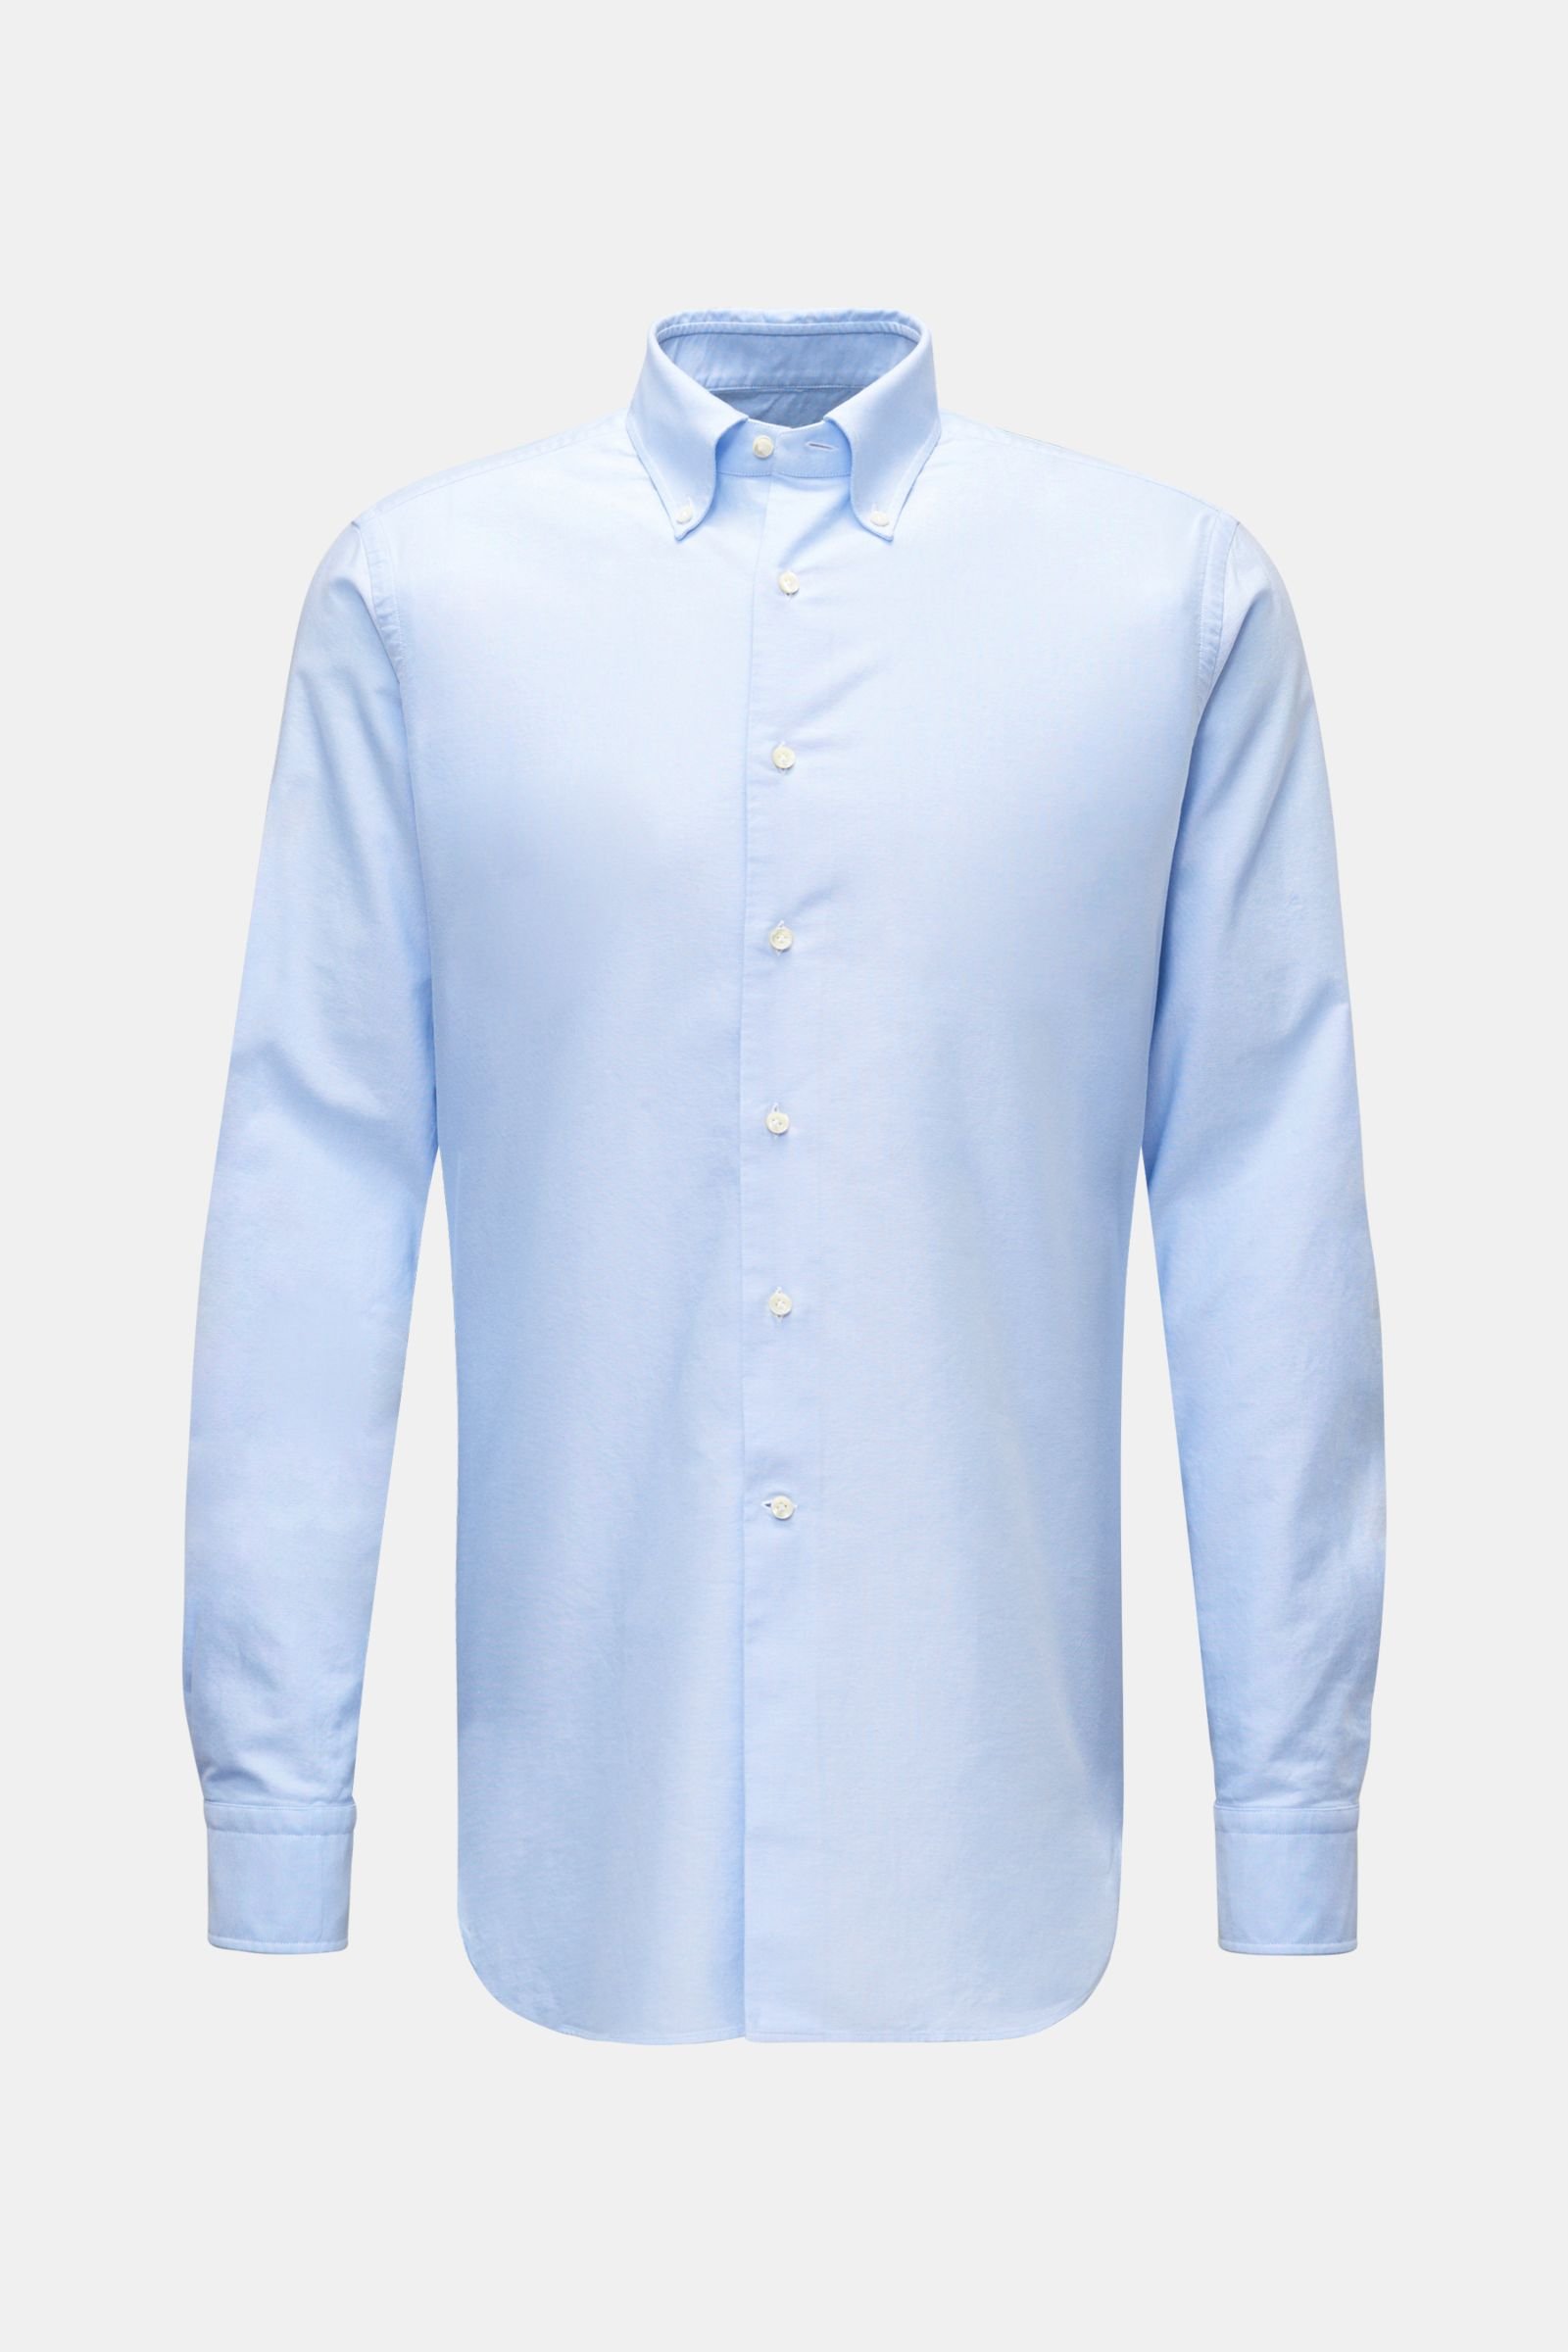 Oxford-Hemd Button-Down-Kragen hellblau